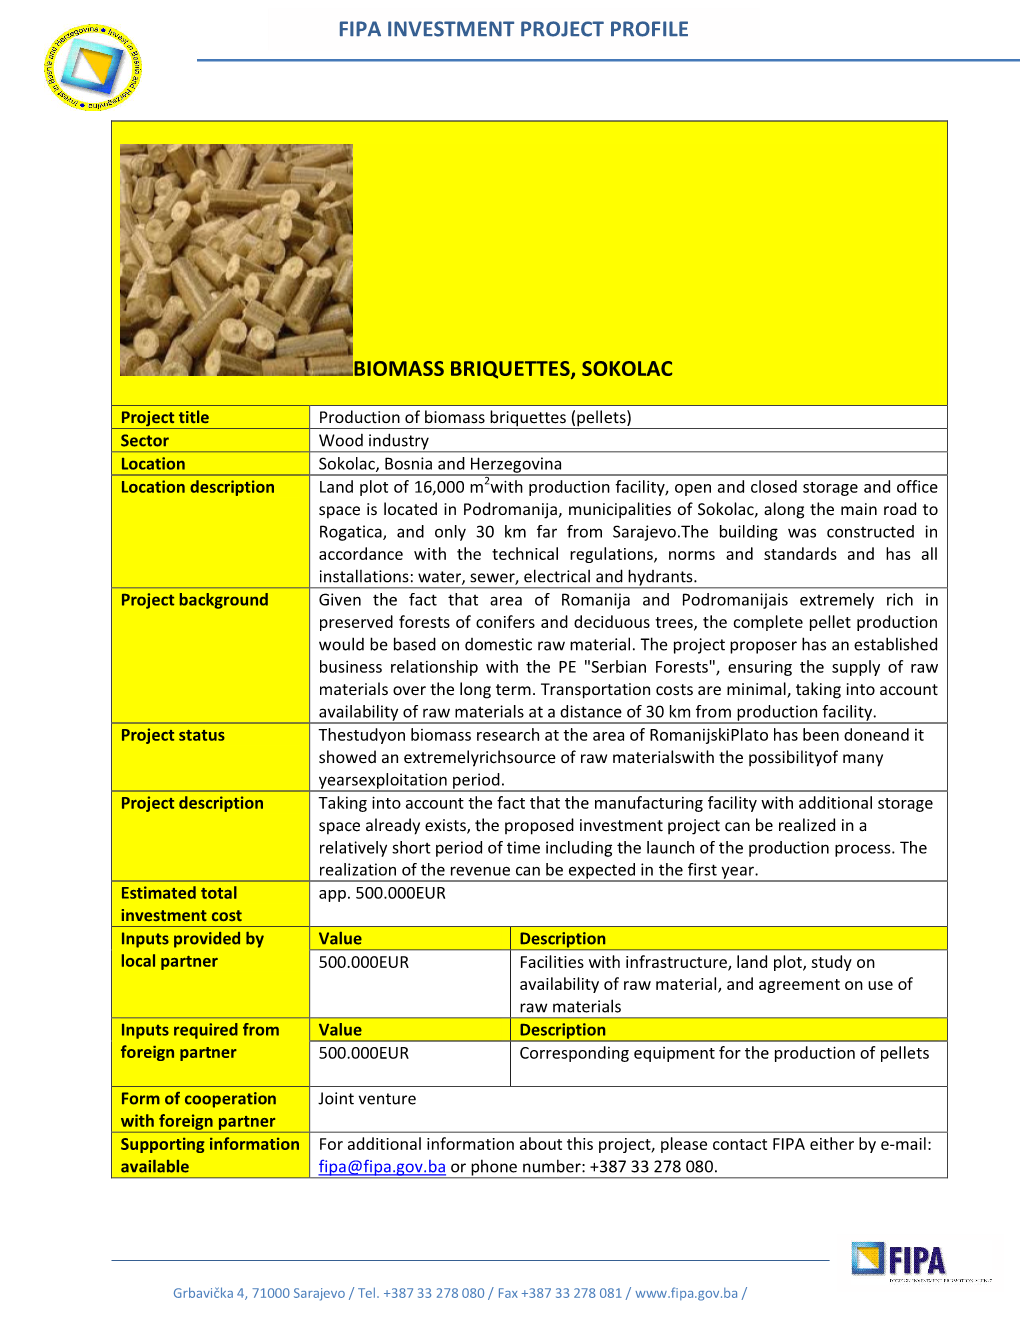 Biomass Briquettes, Sokolac